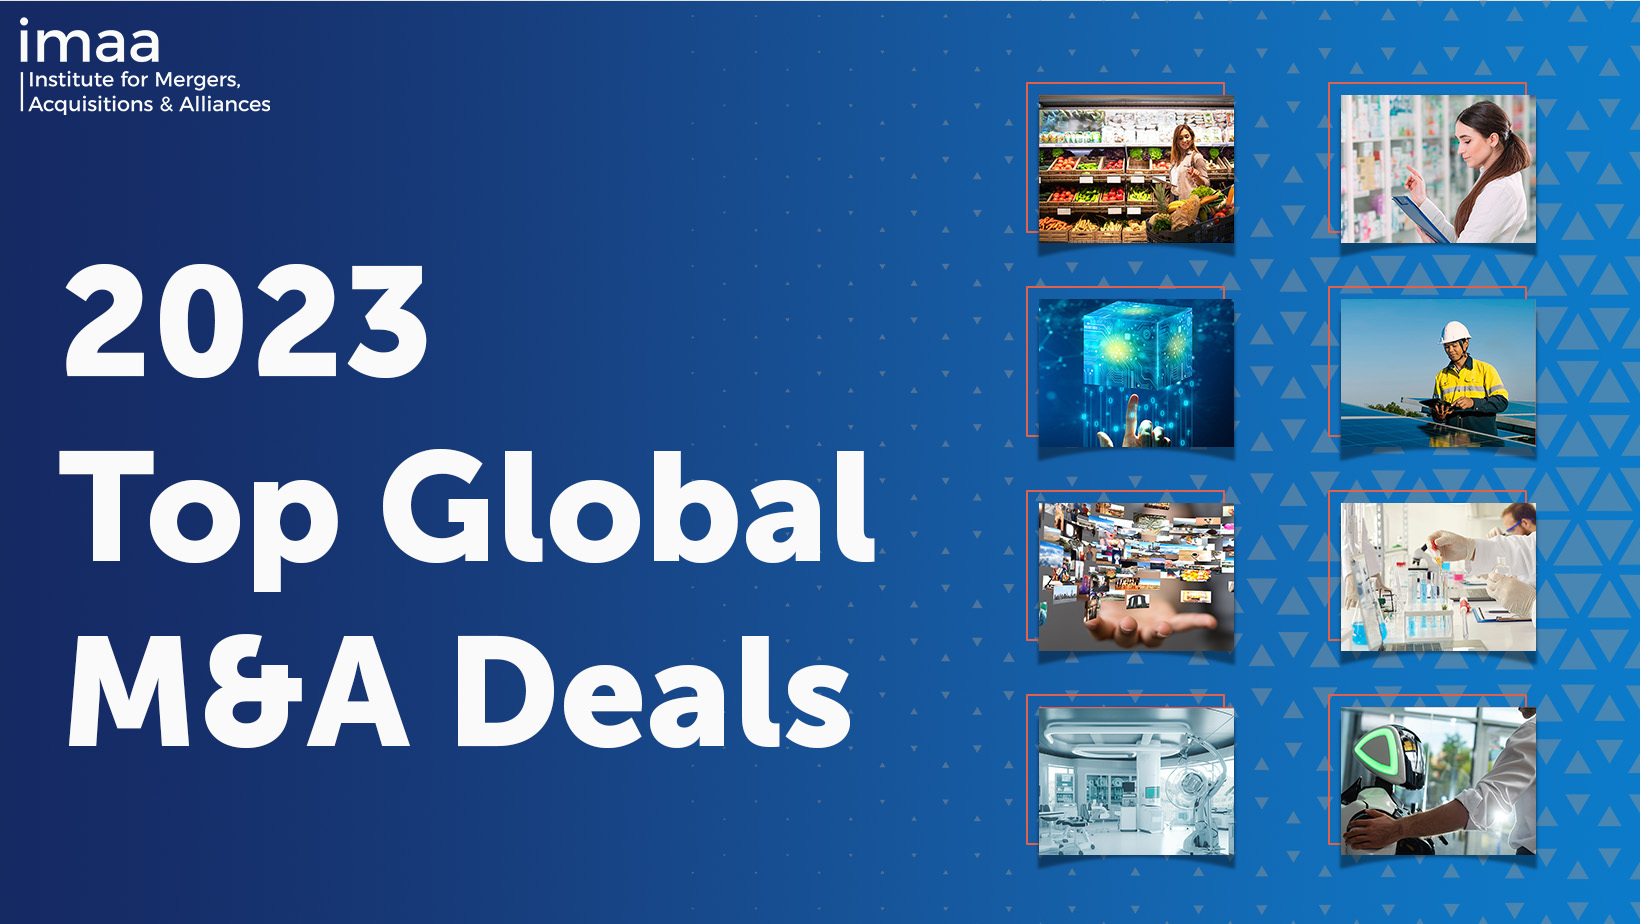 2023 Top Global M&A Deals